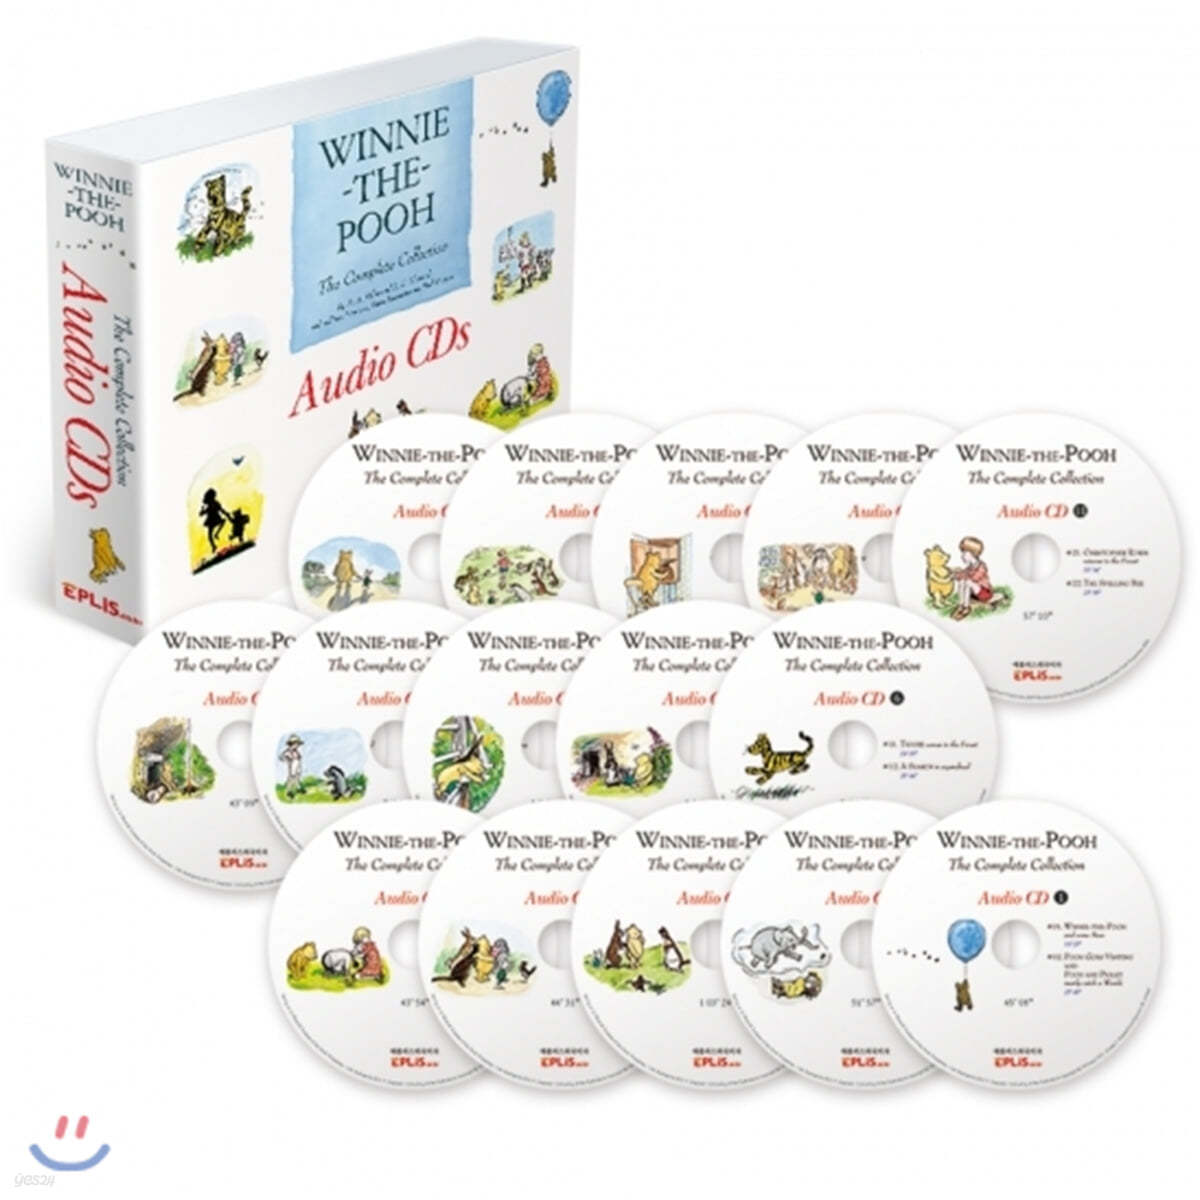 위니 더 푸 Audio CD 15종 세트 Winnie-the-Pooh : The Complete Collection 